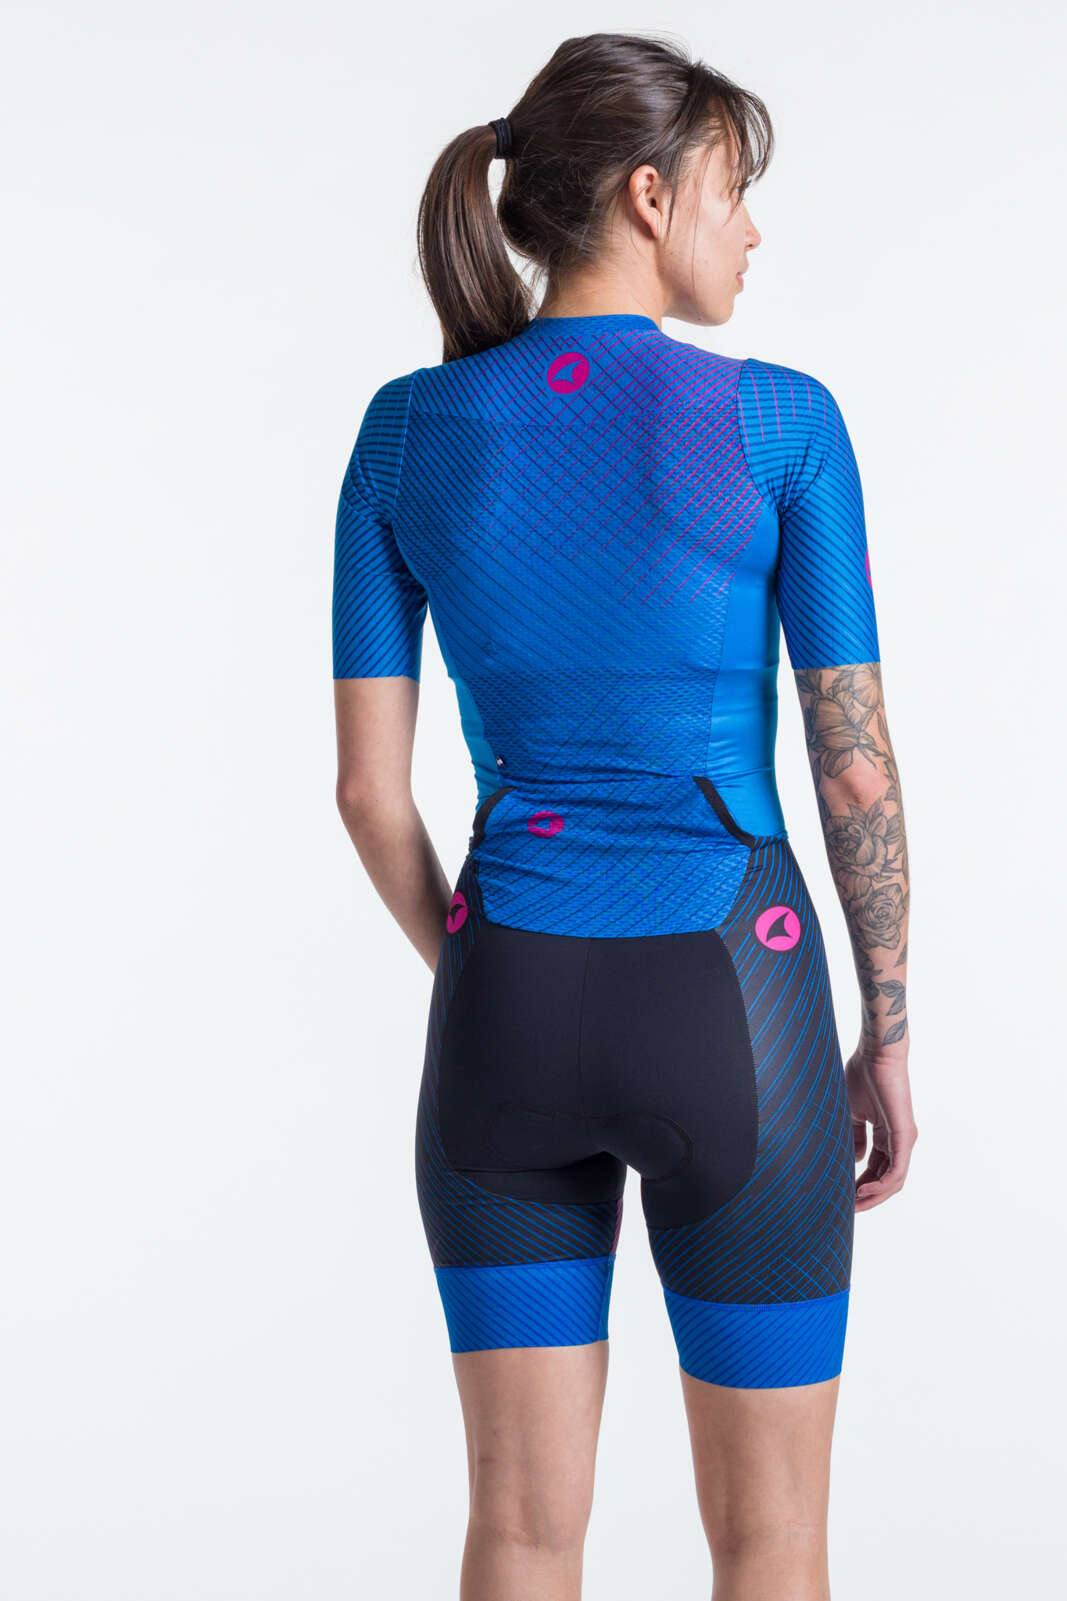 Women's Triathlon Suit - Blue Back View